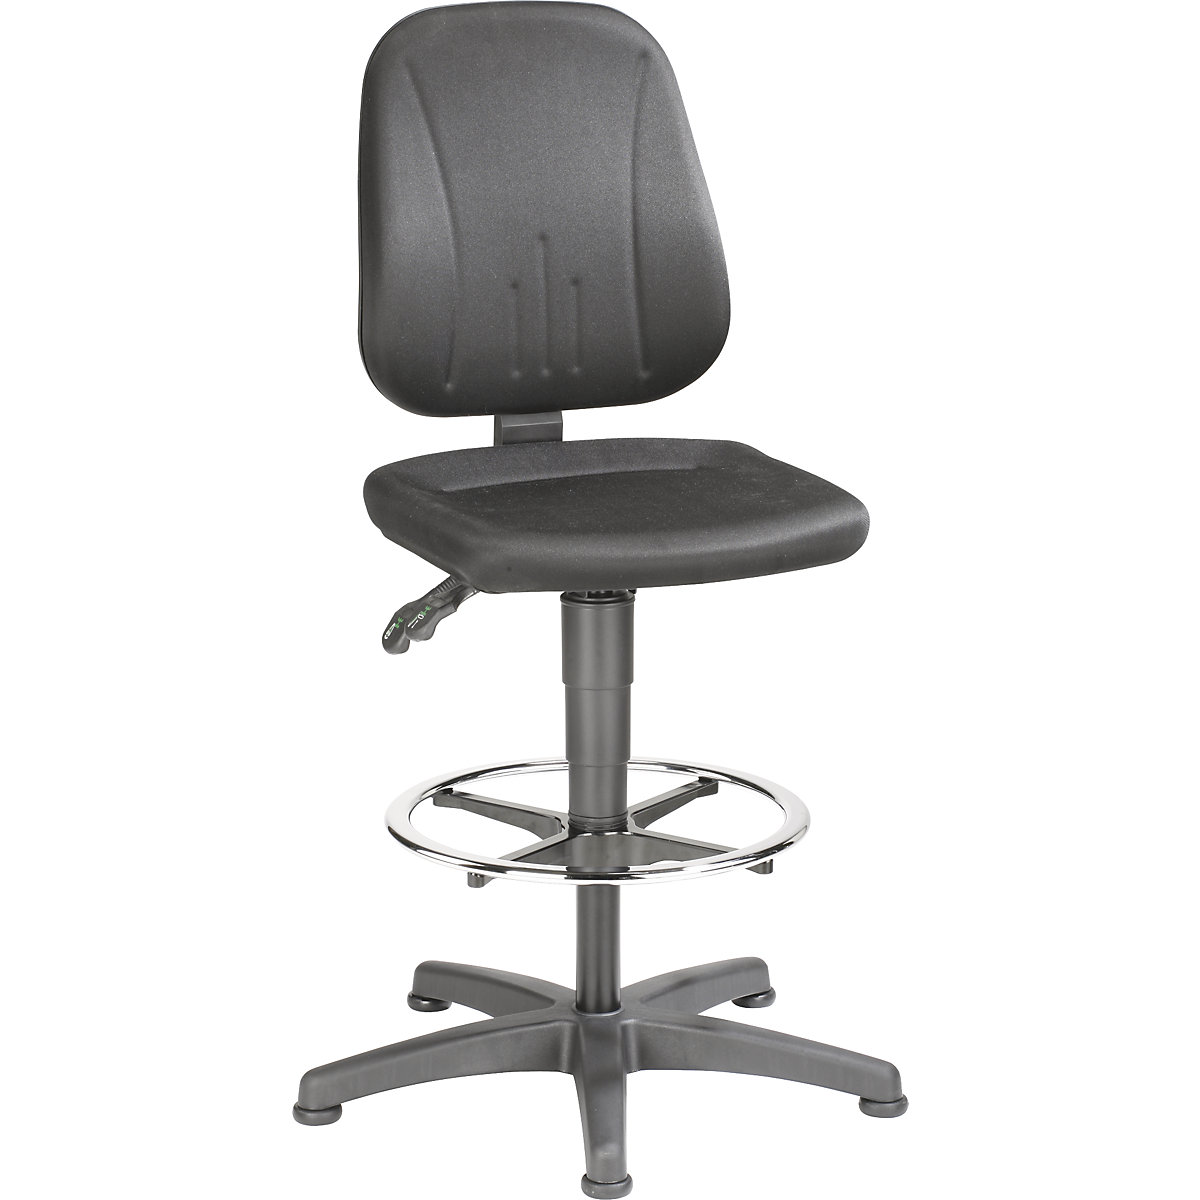 Pracovní otočná židle – bimos, s přestavováním výšky plynovým pístem, látkový potah, černá, s podlahovými patkami a nožním kruhem-2